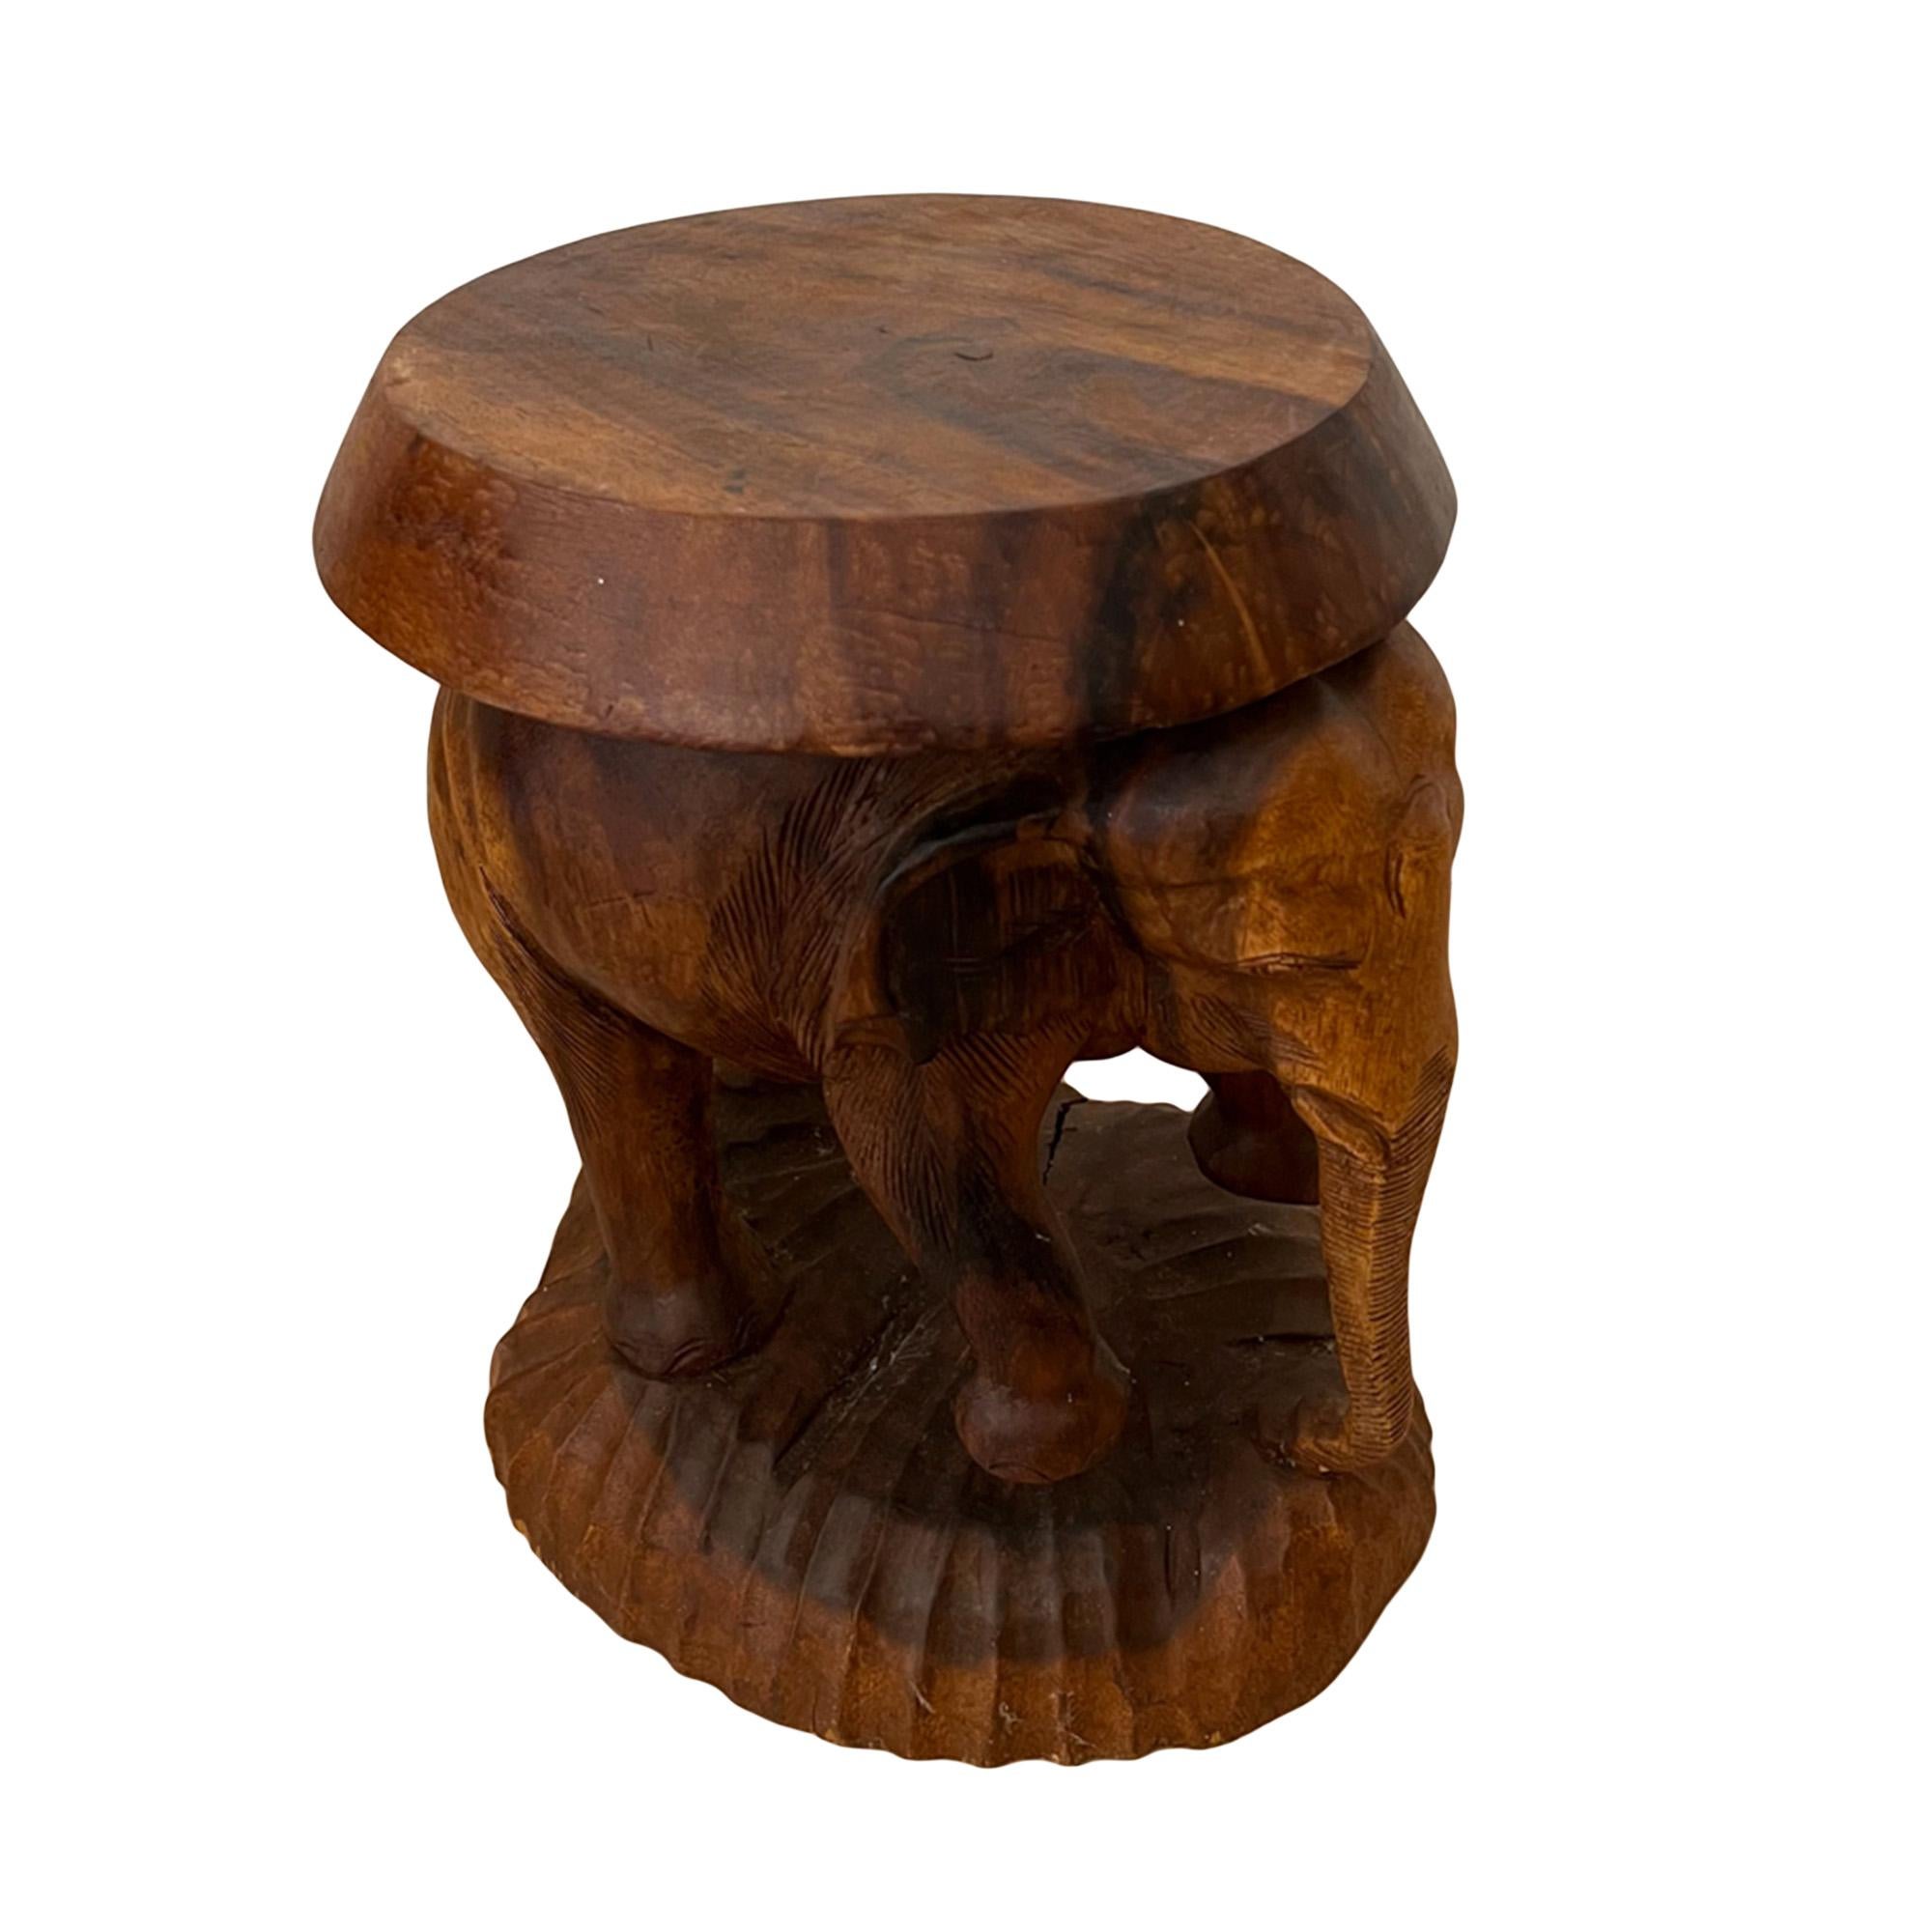 Cette table d'appoint originale a été sculptée dans du bois de padouk à Ceylan dans les années 1950. 

Veuillez regarder toutes les photos pour voir les détails de ce charmant éléphant - décoratif et pratique !

Cet éléphant est posé sur un socle en